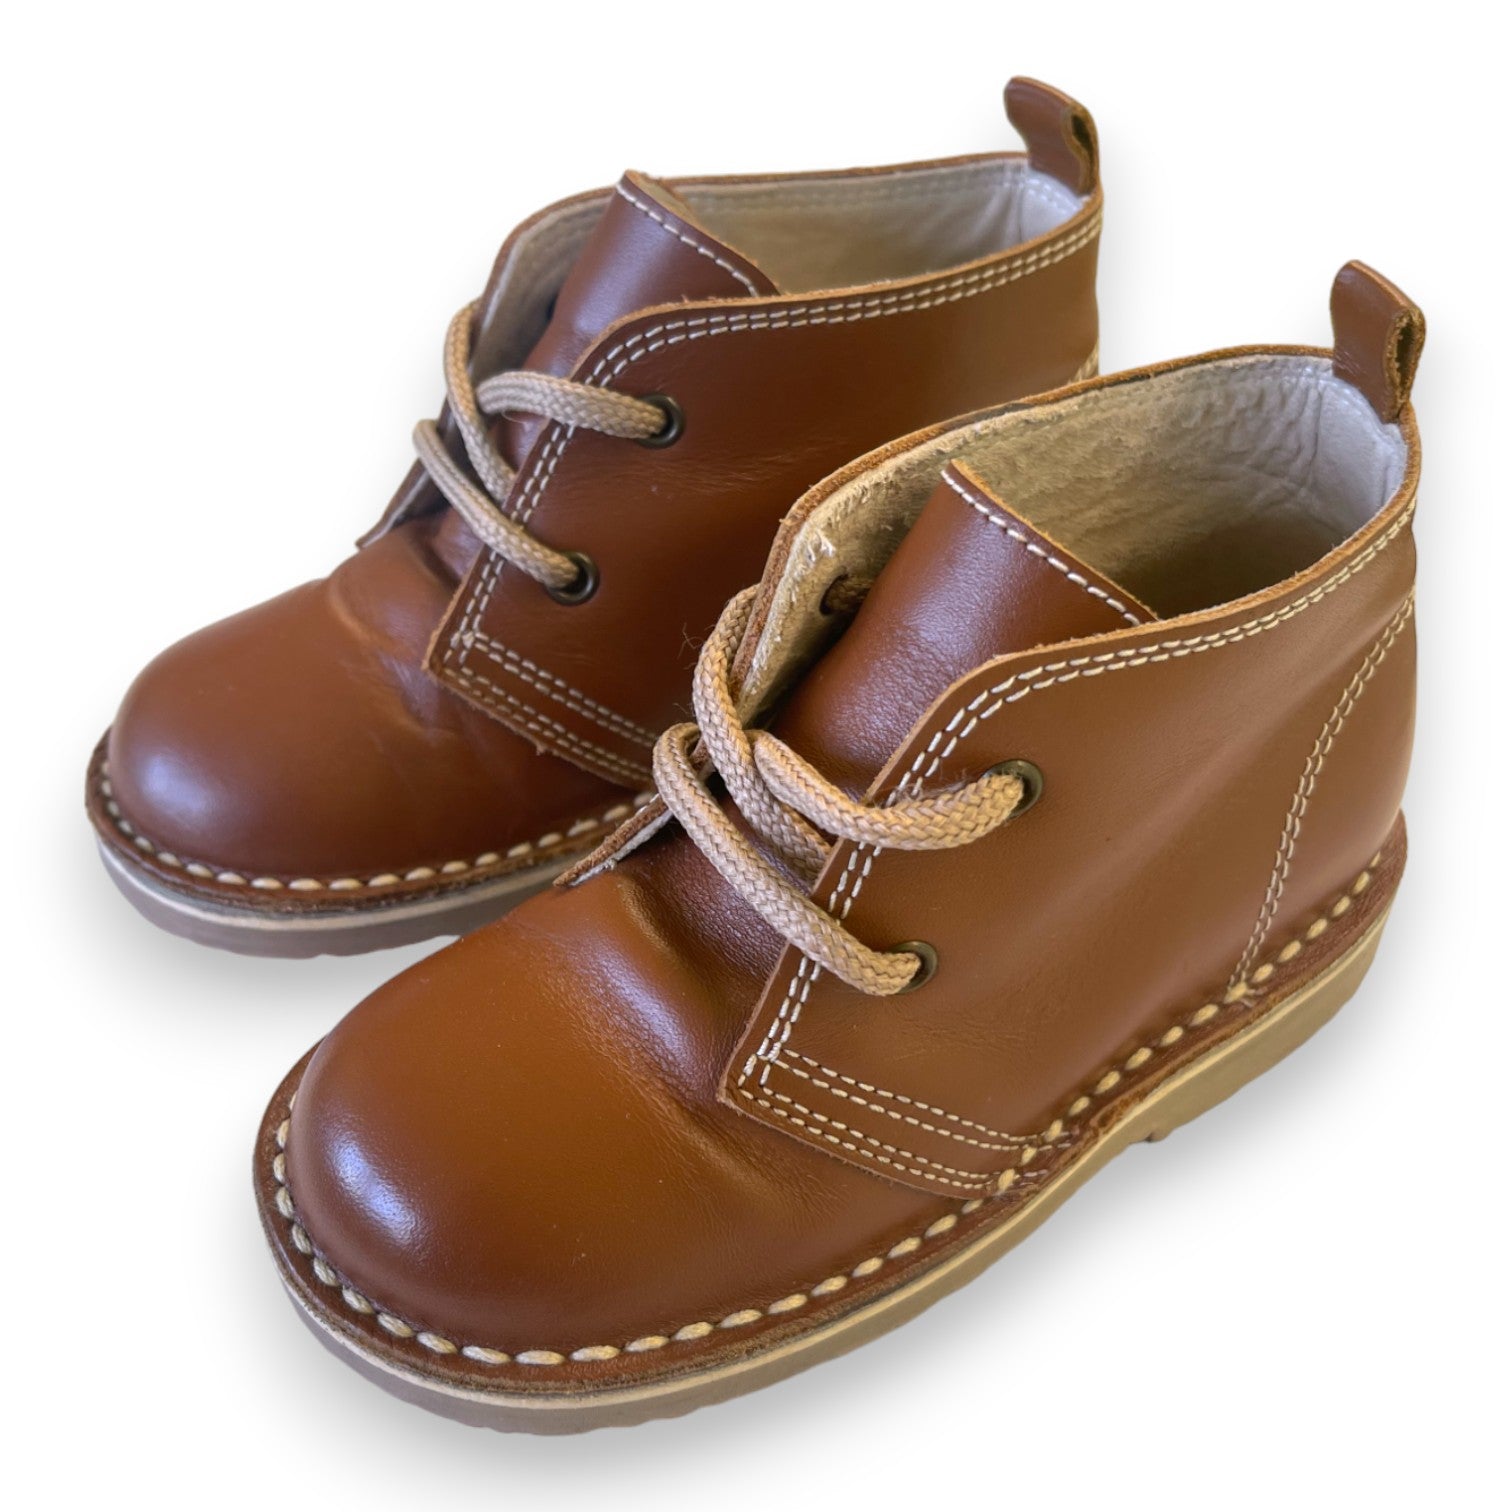 LA COQUETA - Chaussures en cuir marron à lacets - 24